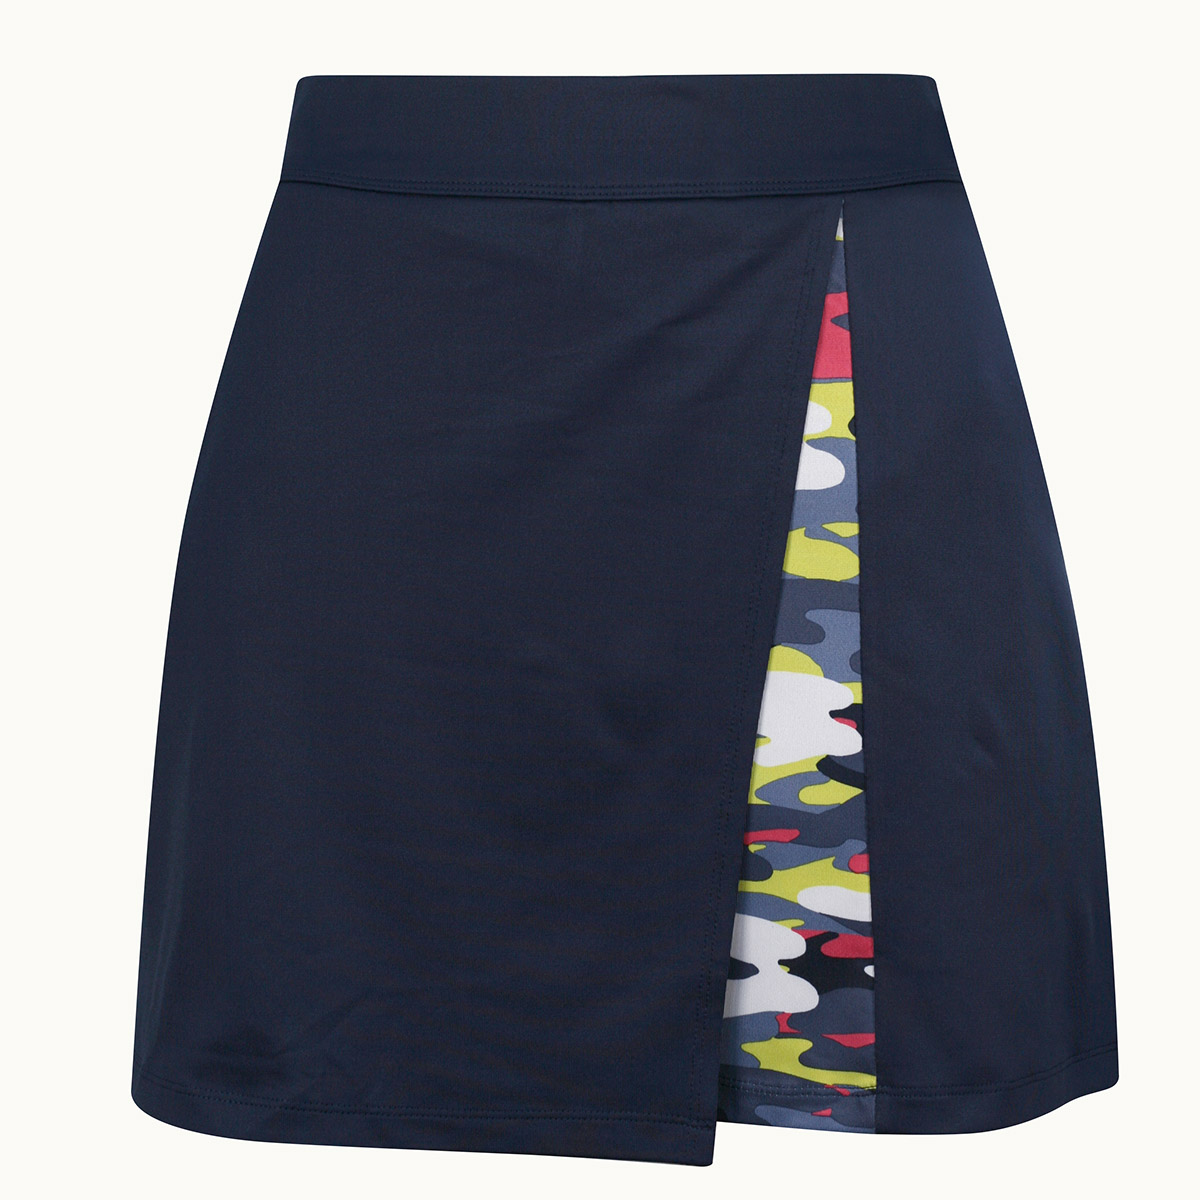 Callaway Multi-Colour Camo Wrap dámská golfová sukně, tmavě modrá, vel. S